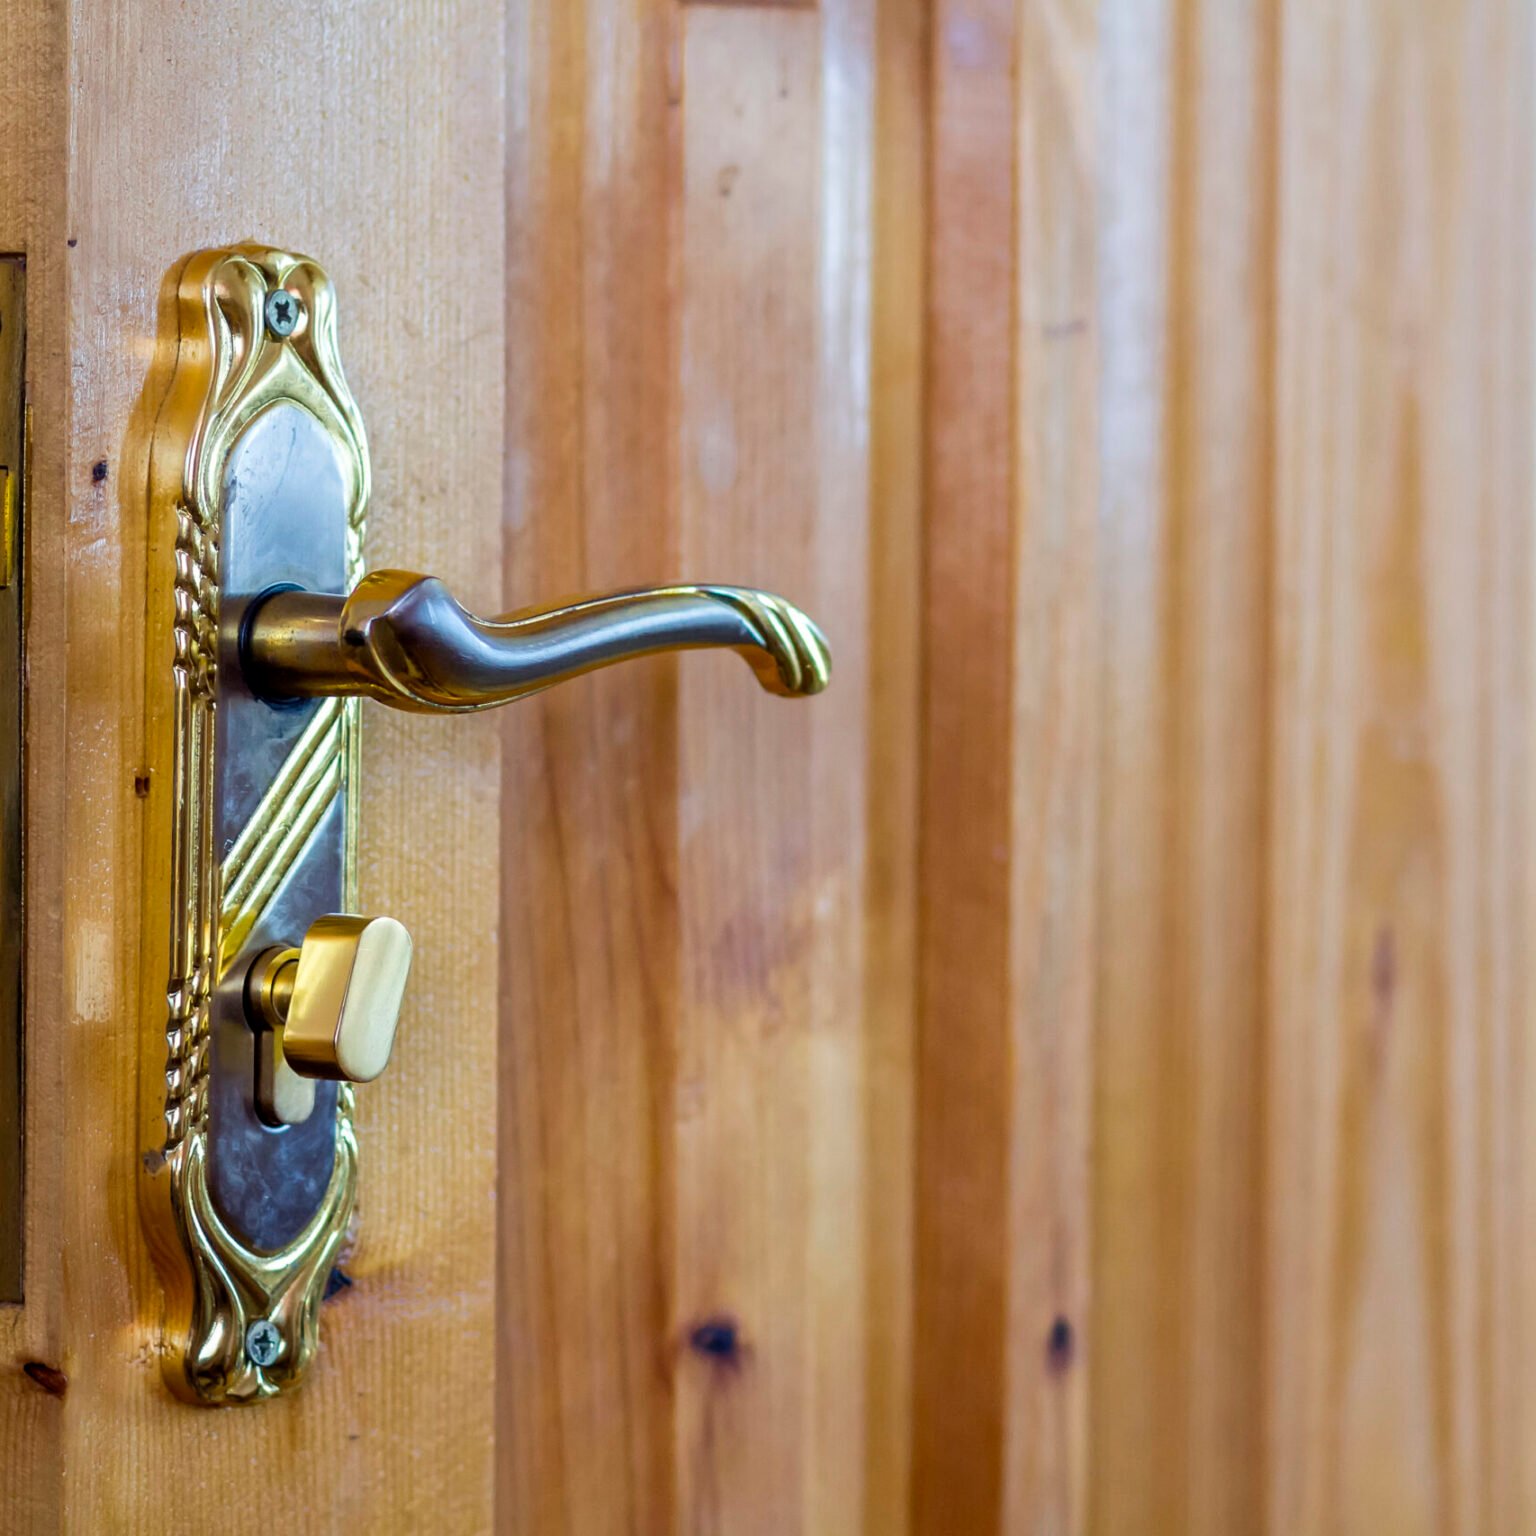 Vintage door handle on wooden doors close-up